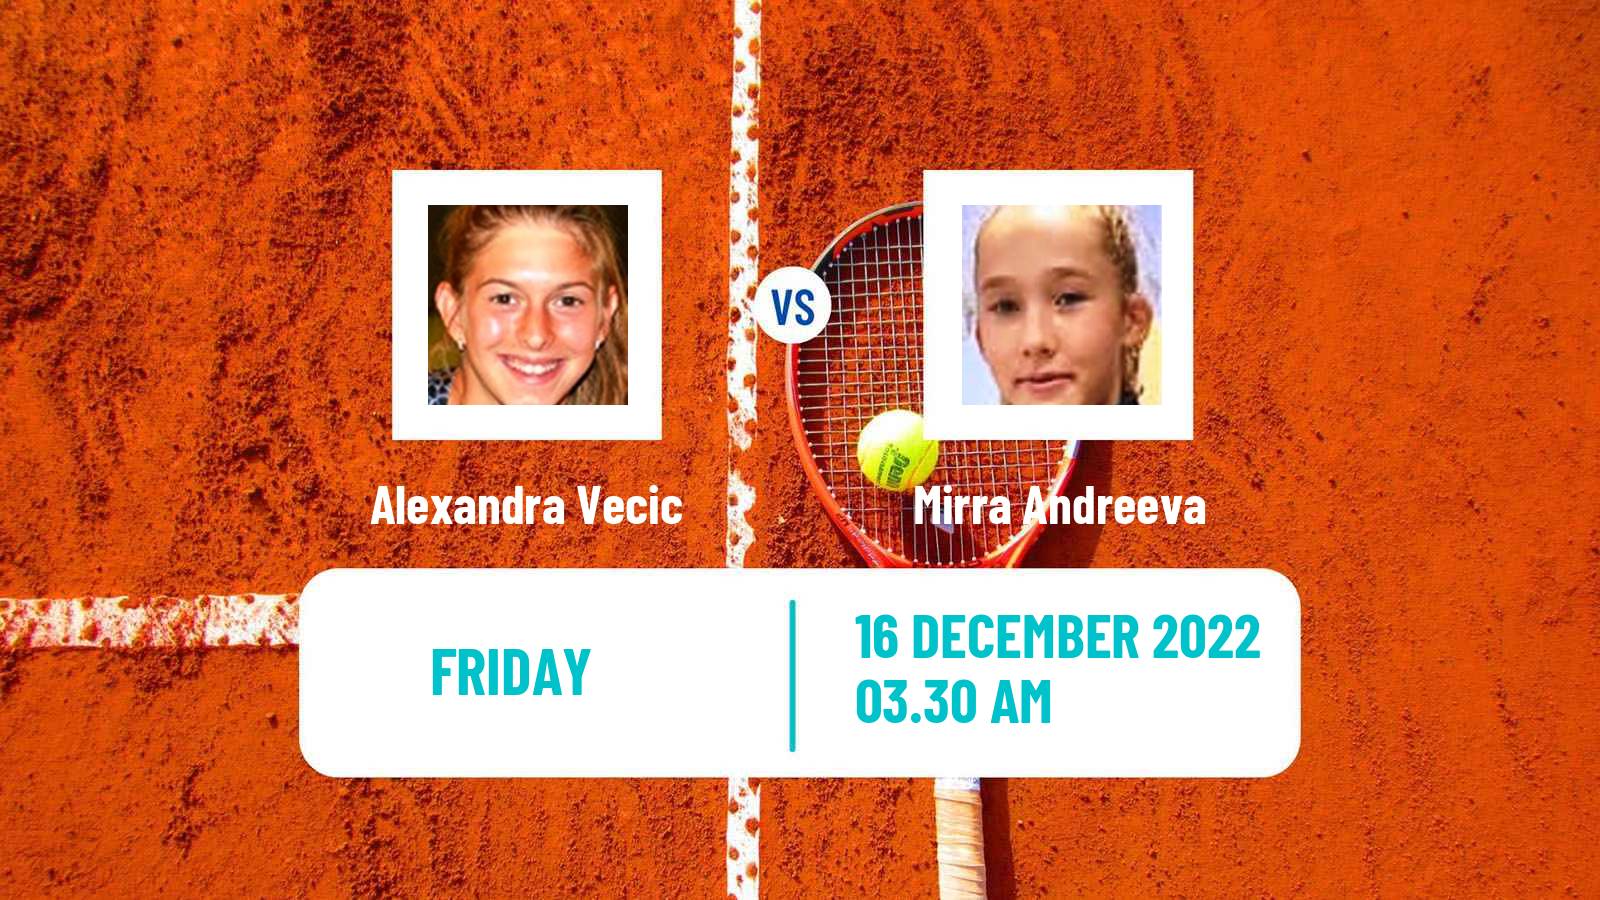 Tennis ITF Tournaments Alexandra Vecic - Mirra Andreeva